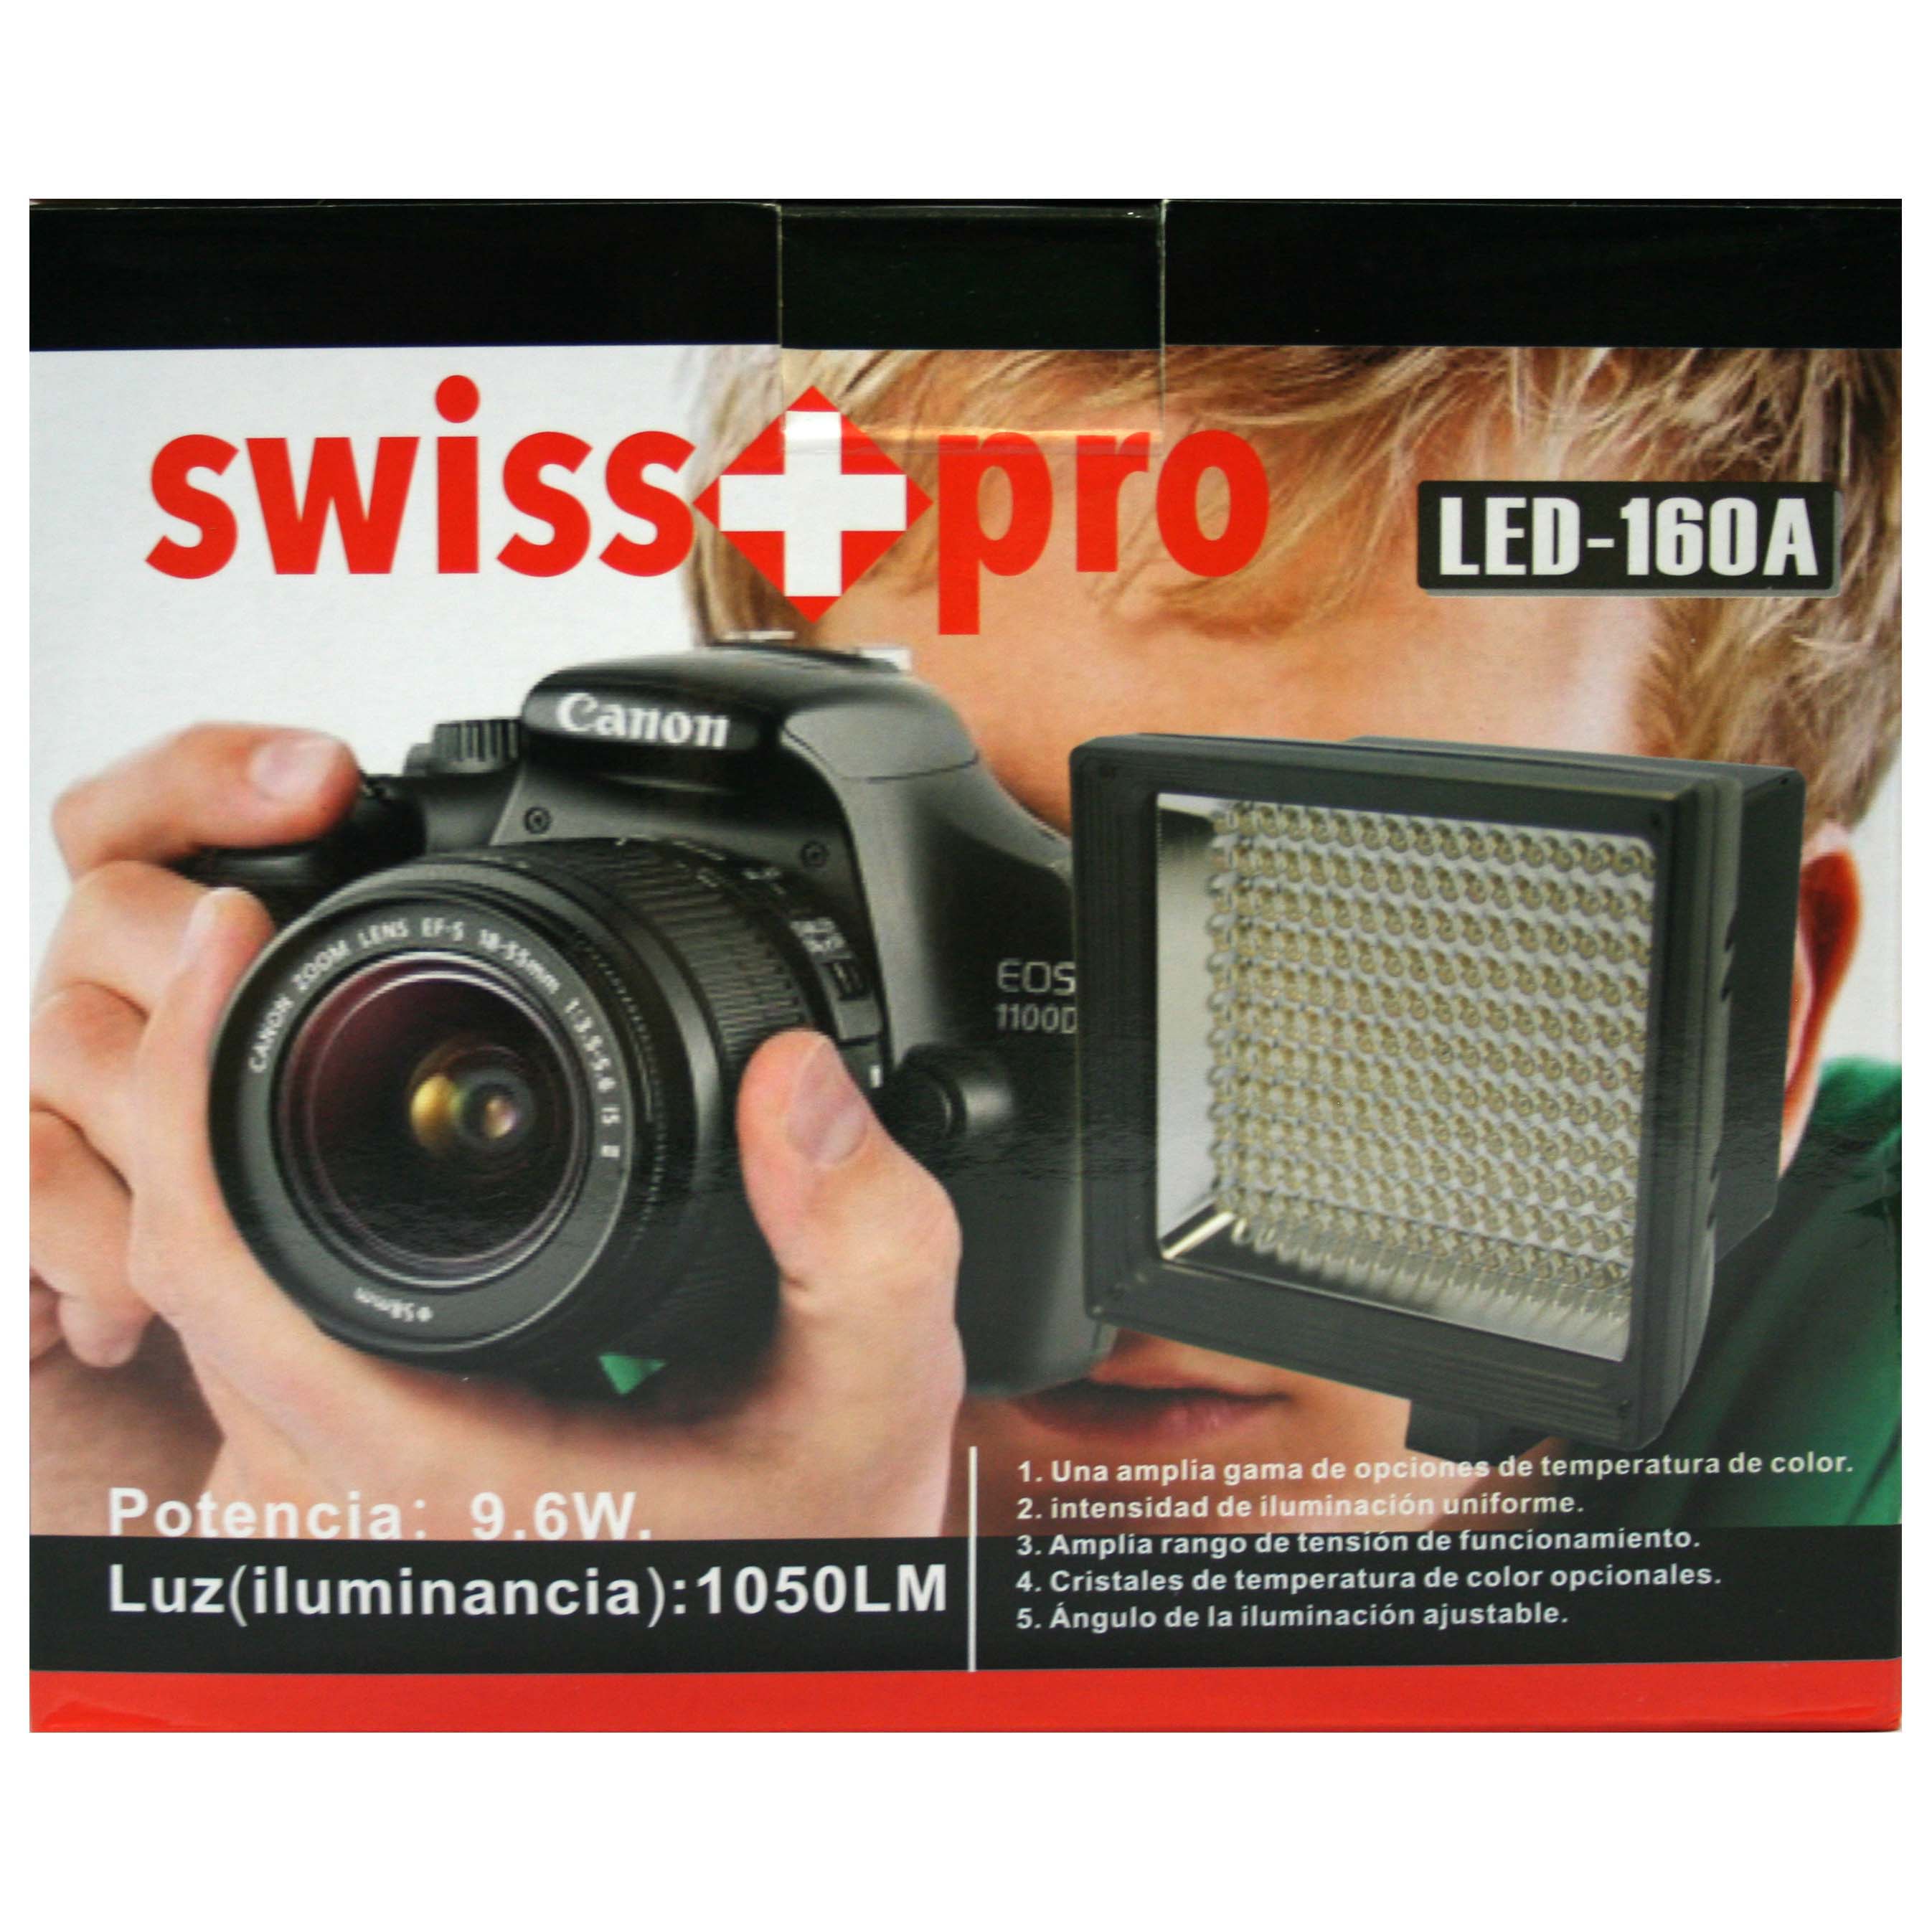 ANTORCHA LED SWISS-PRO IS-L160A 160 LEDS SWISS-PRO 